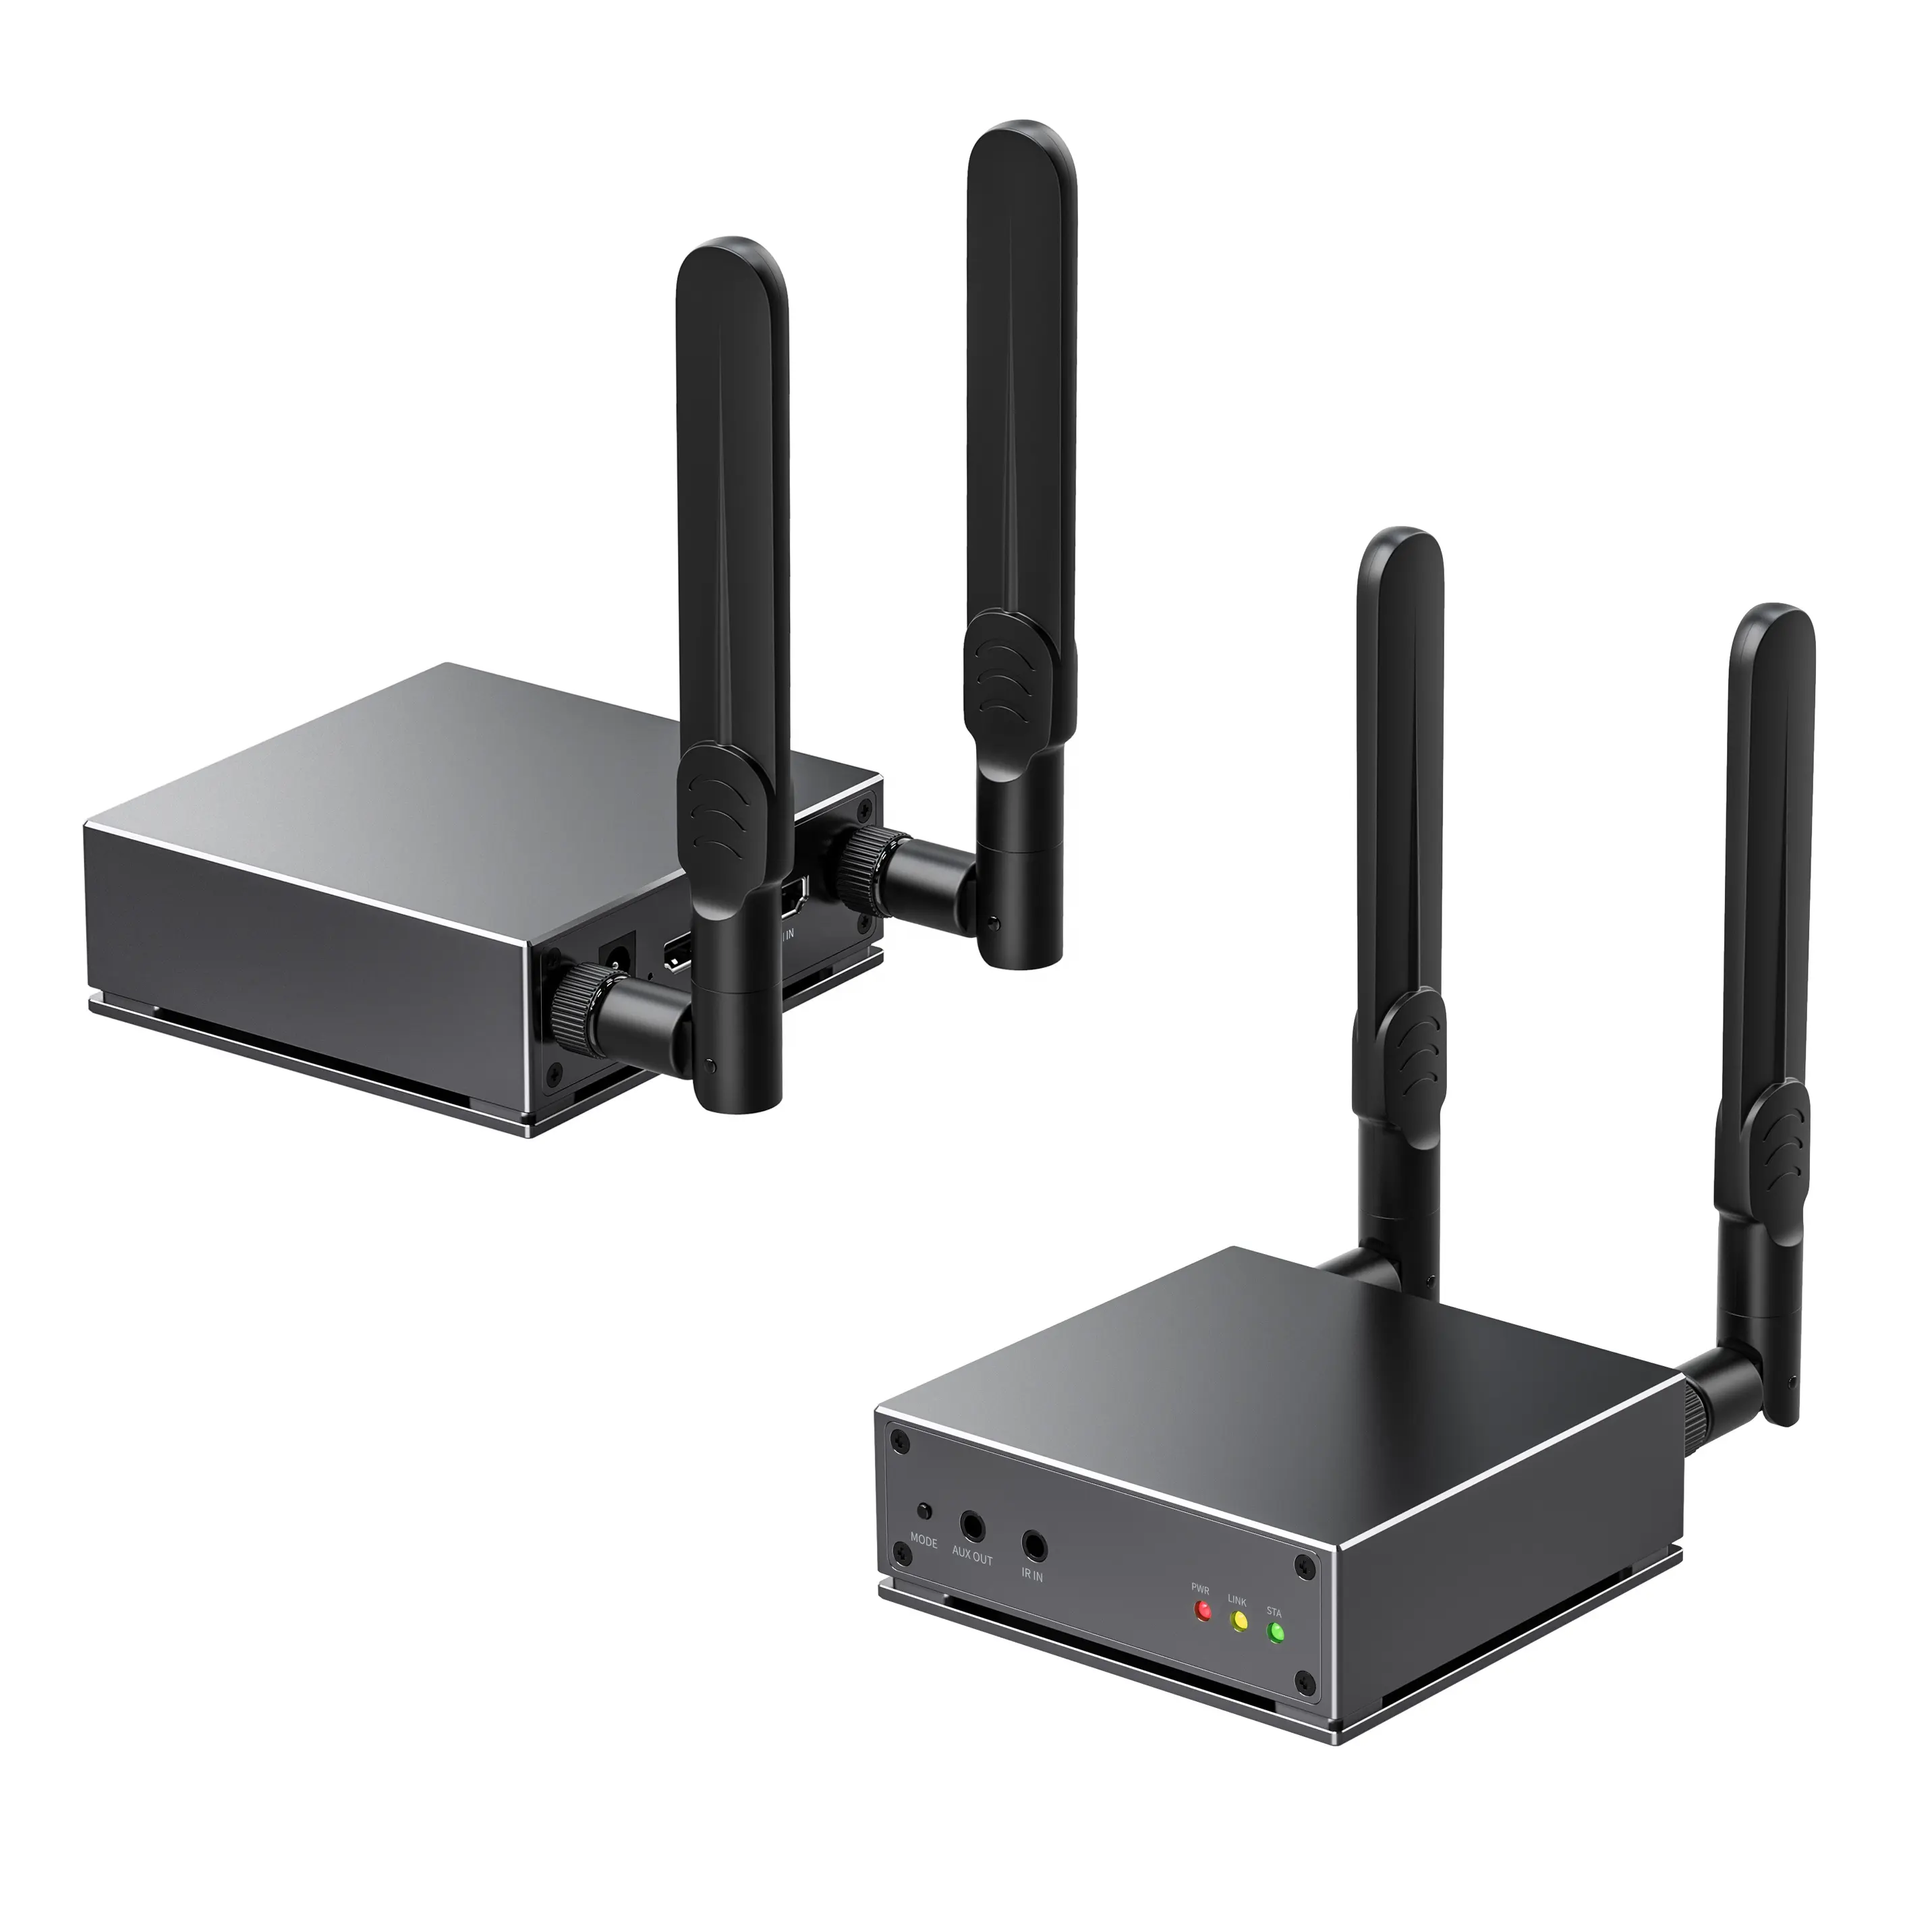 200m HD MI Wireless Extender Sender und Empfänger 5G/2.4G WiFi Wireless Video Audio Sender und Empfänger